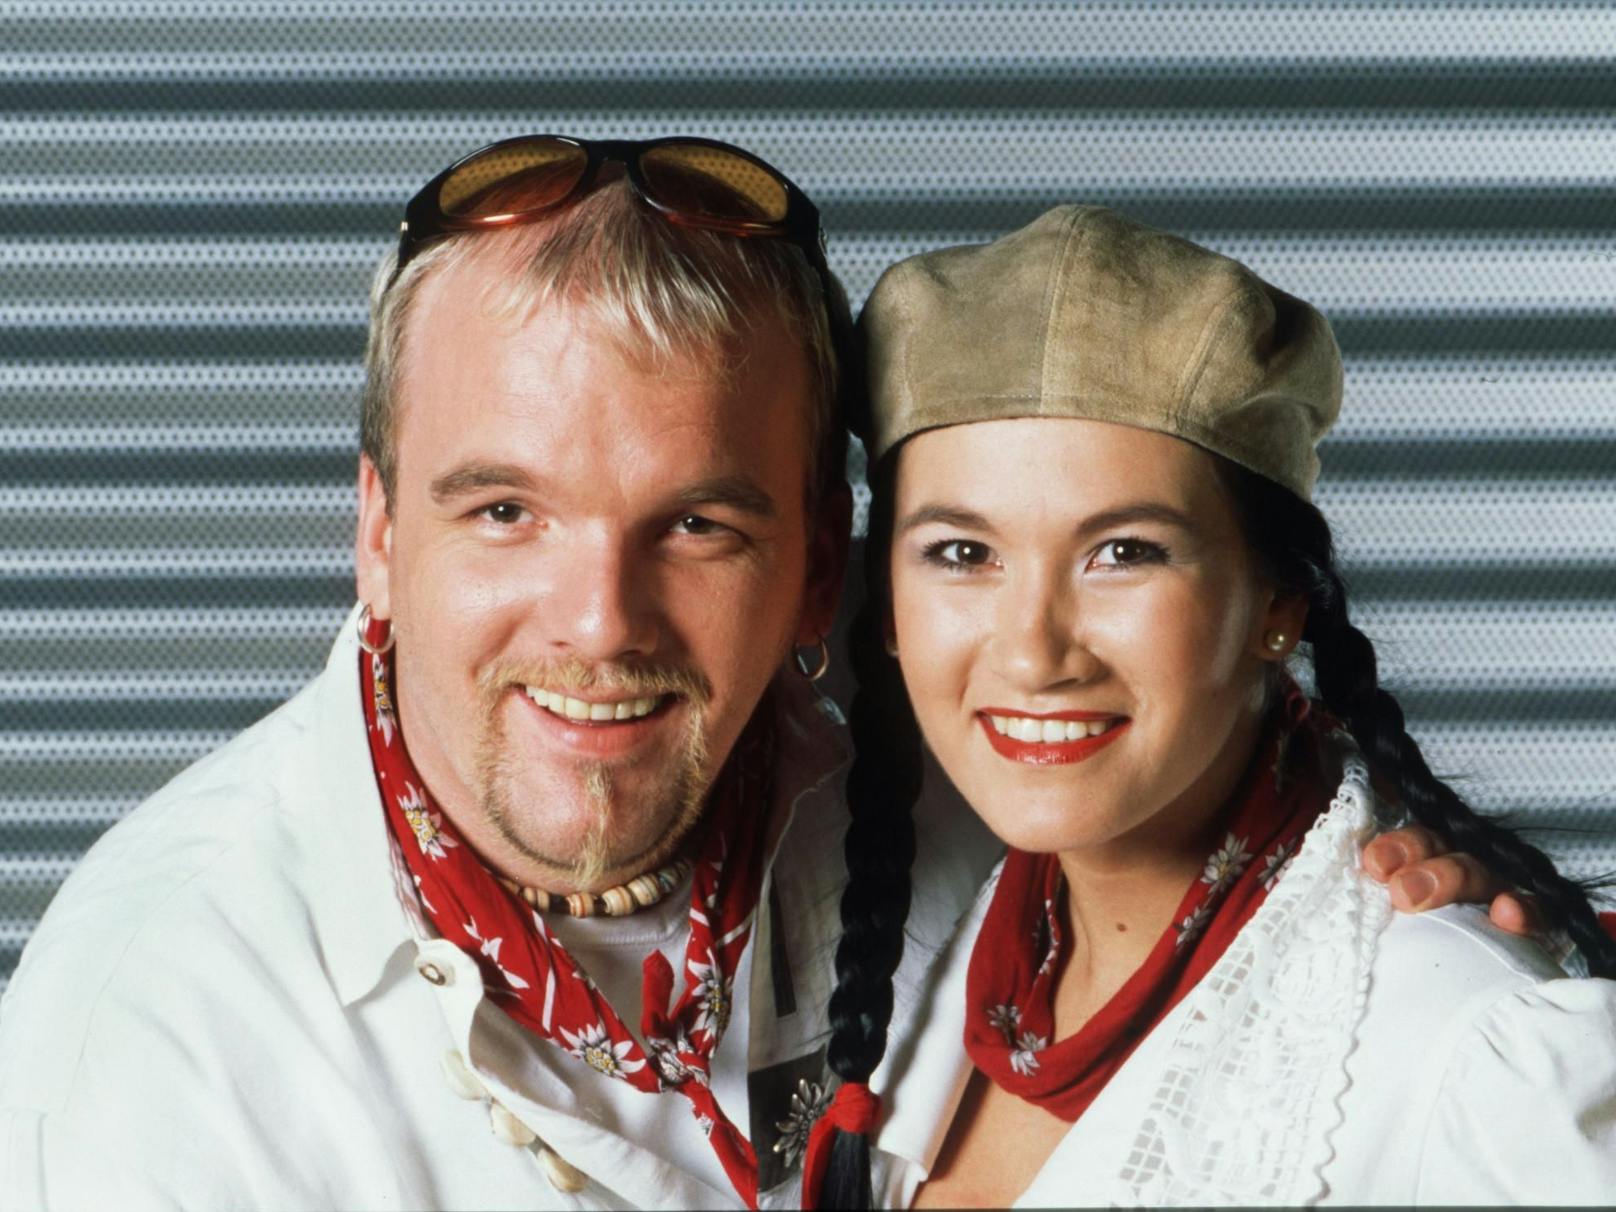 Begonnen hat alles 1999: Der "Anton aus Tirol" (featuring <strong>Antonia</strong>) hielt sich 75 Wochen in den österreichischen Charts